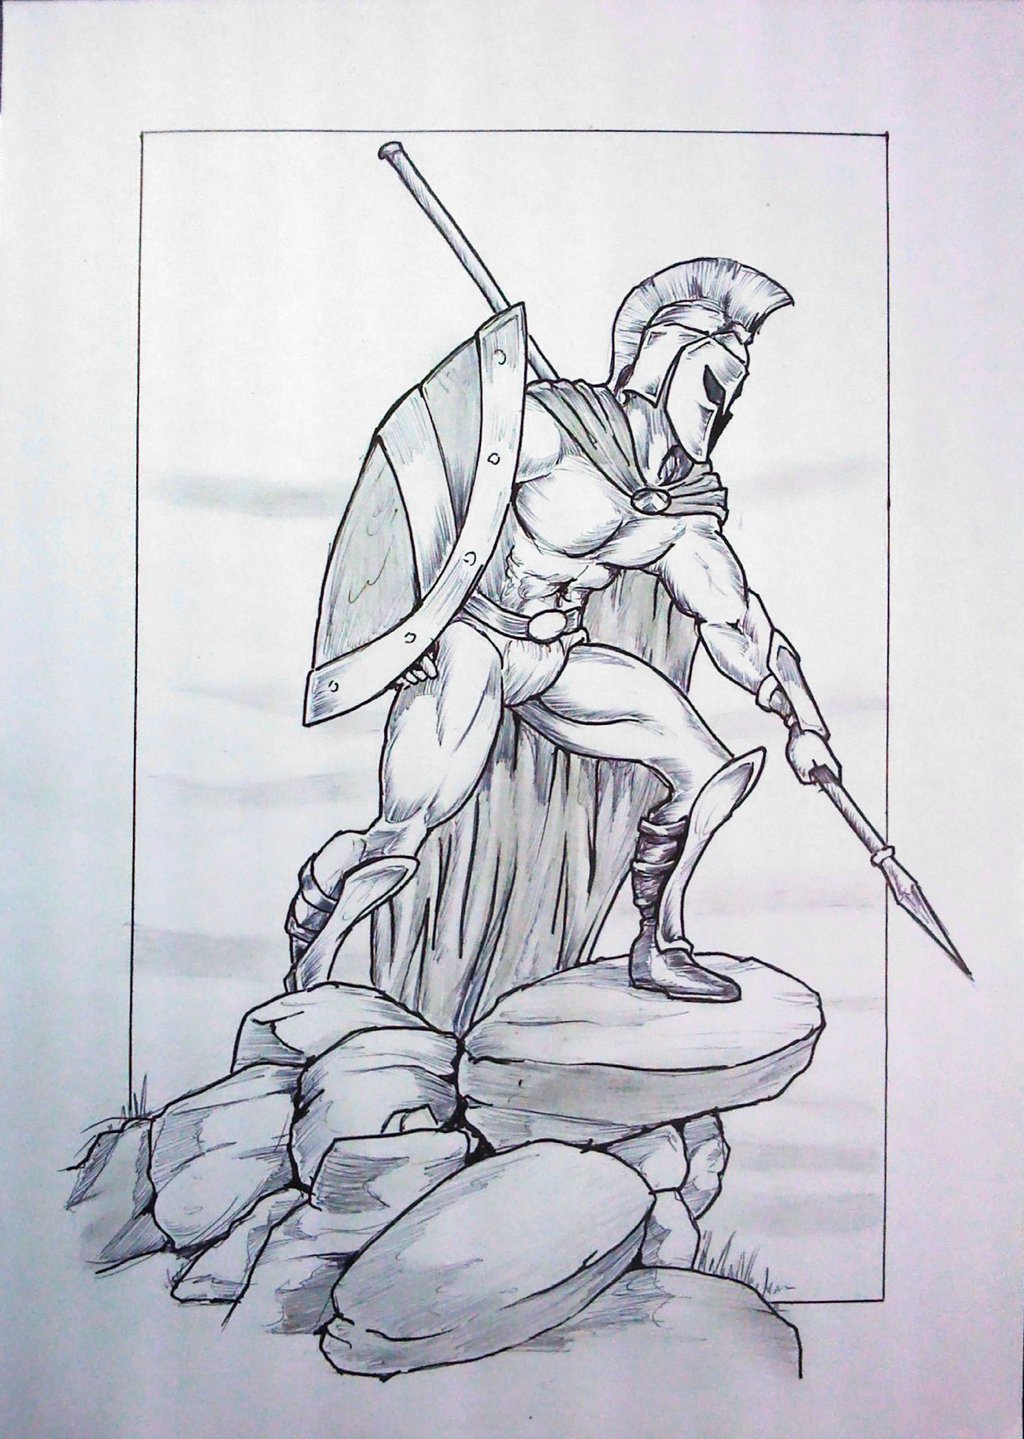 Spartan Sketch at Explore collection of Spartan Sketch